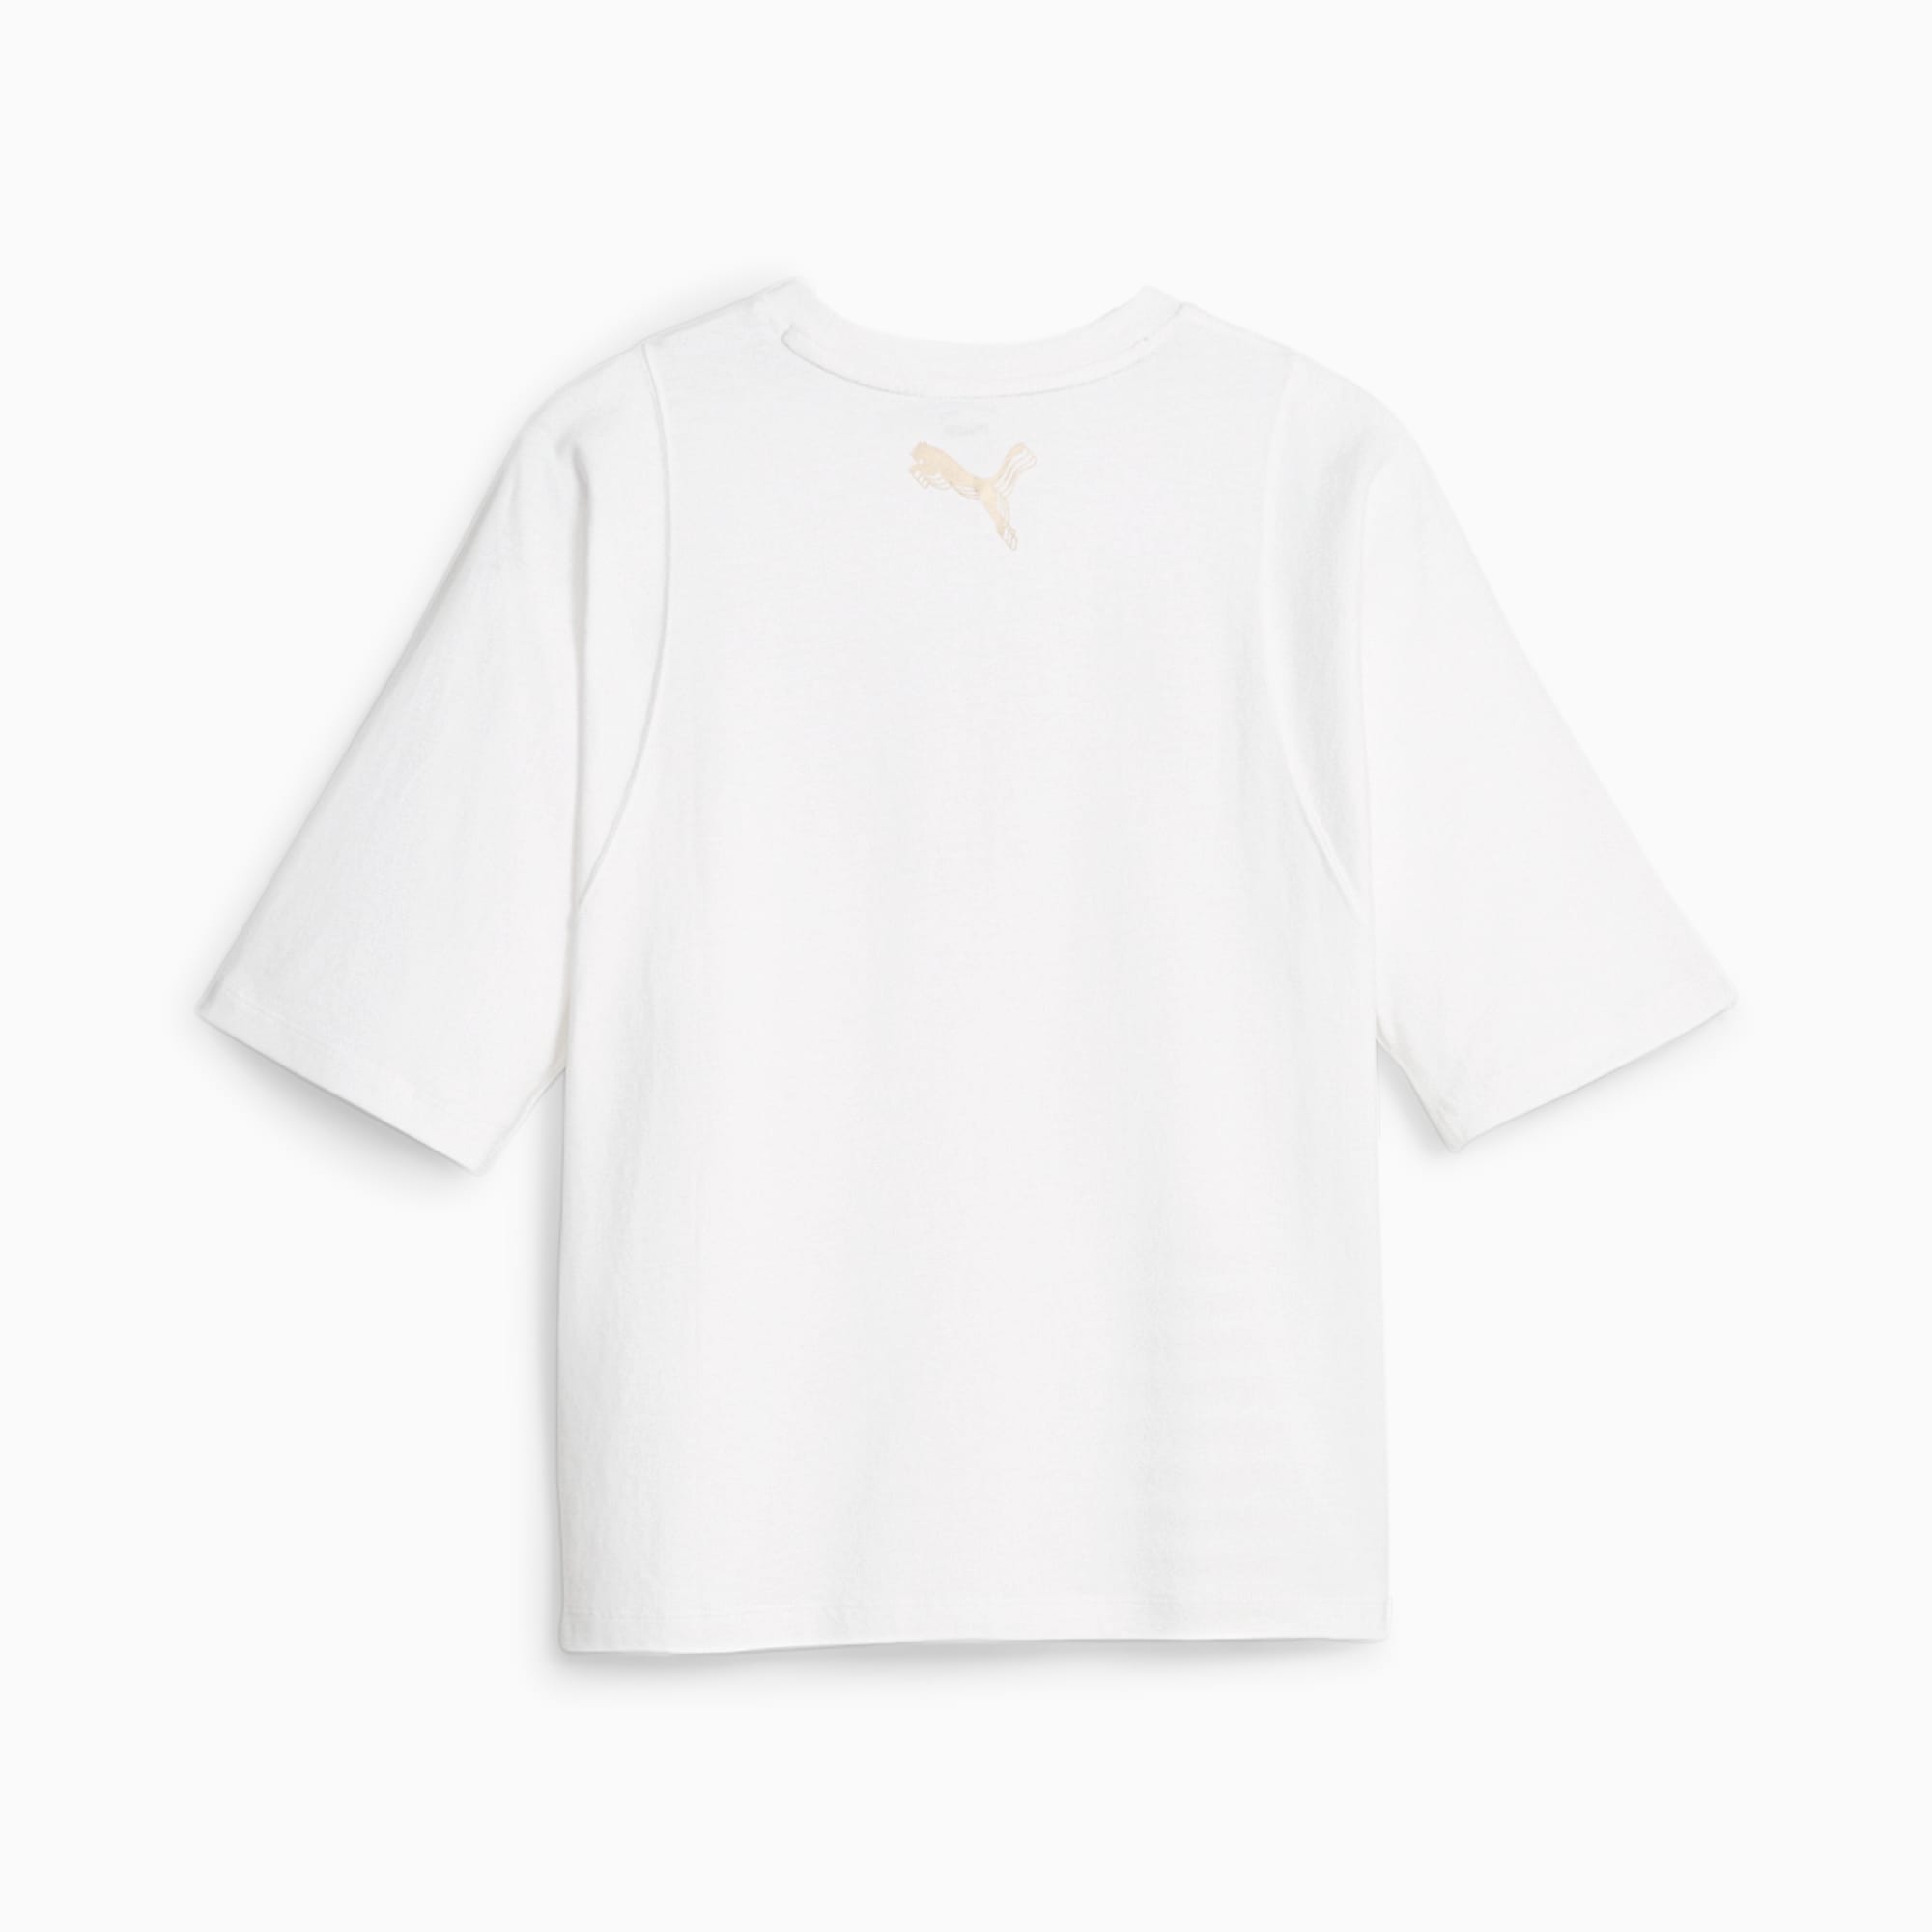 PUMA T-Shirt De Basketball Gold Standard Femme, Blanc